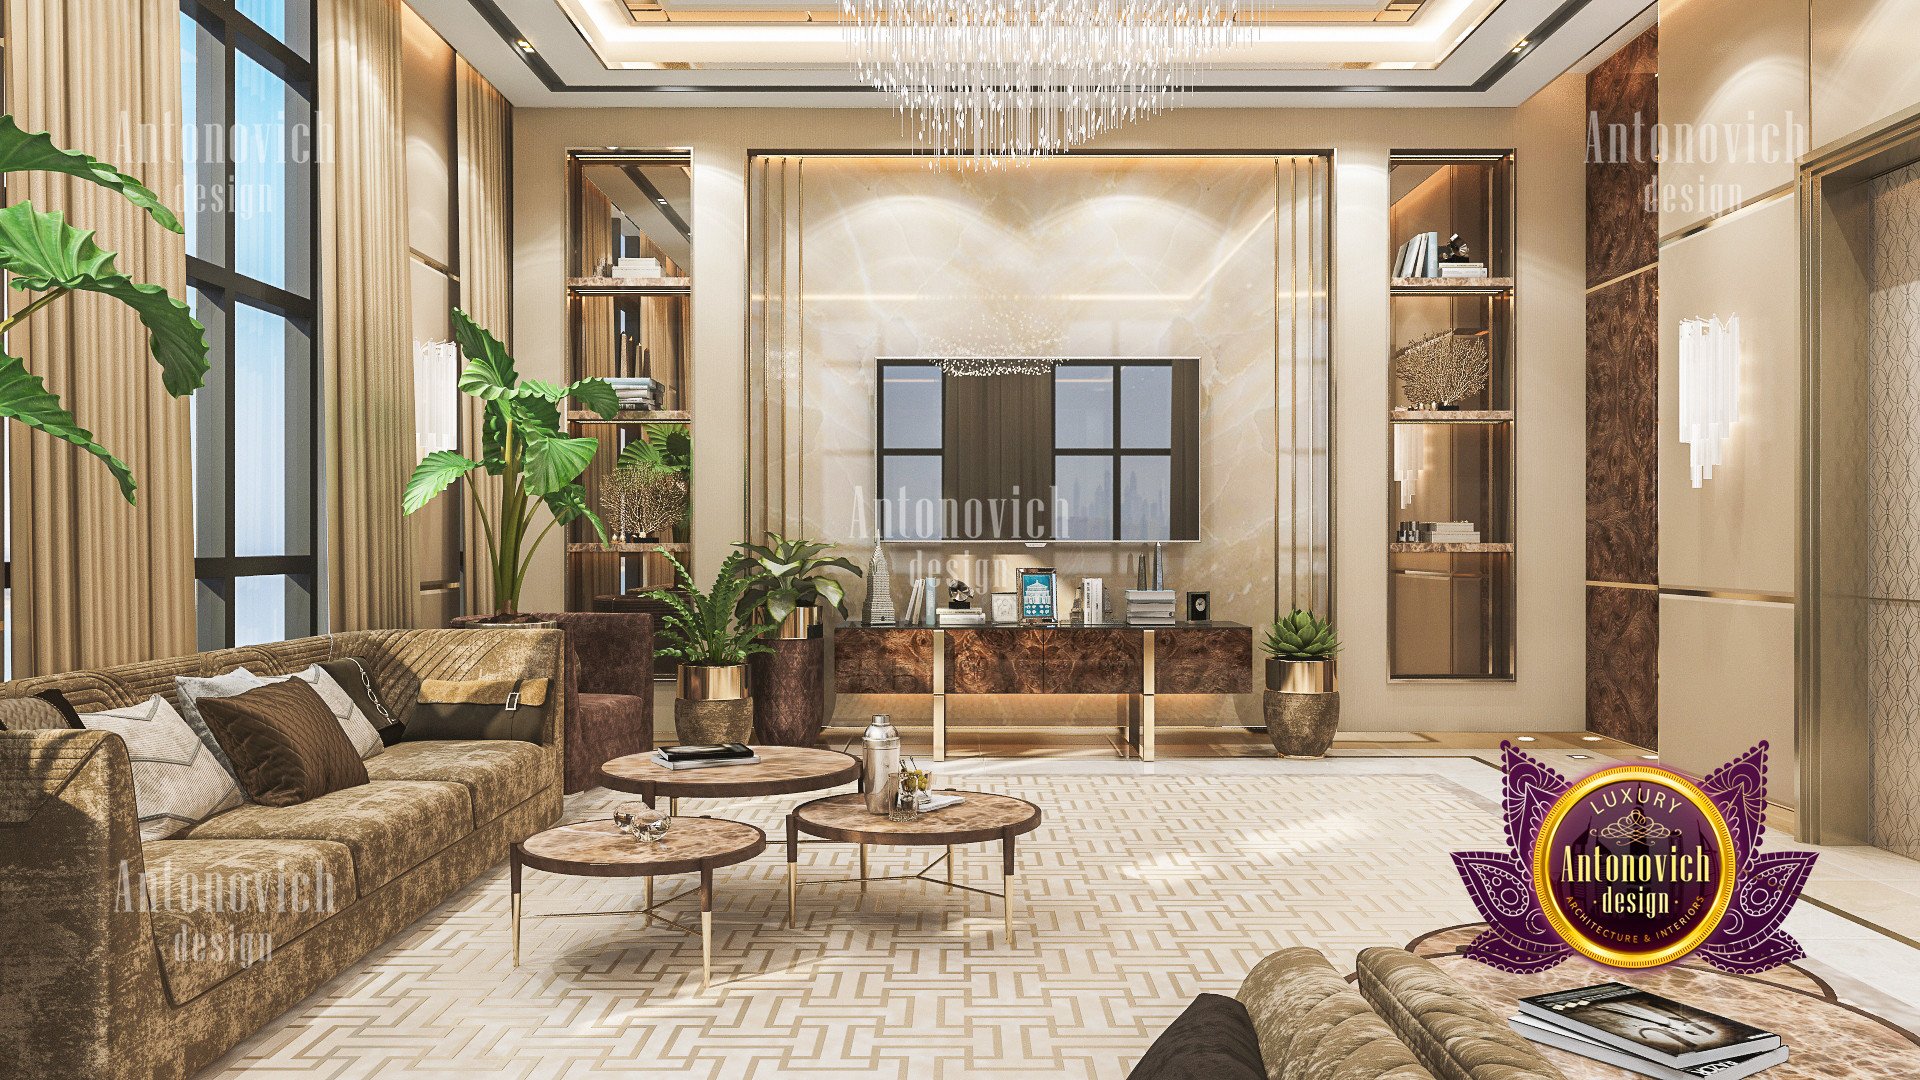 Luxury Room Design / LUXURY ANTONOVICH DESIGN UAE: Living room interior ...